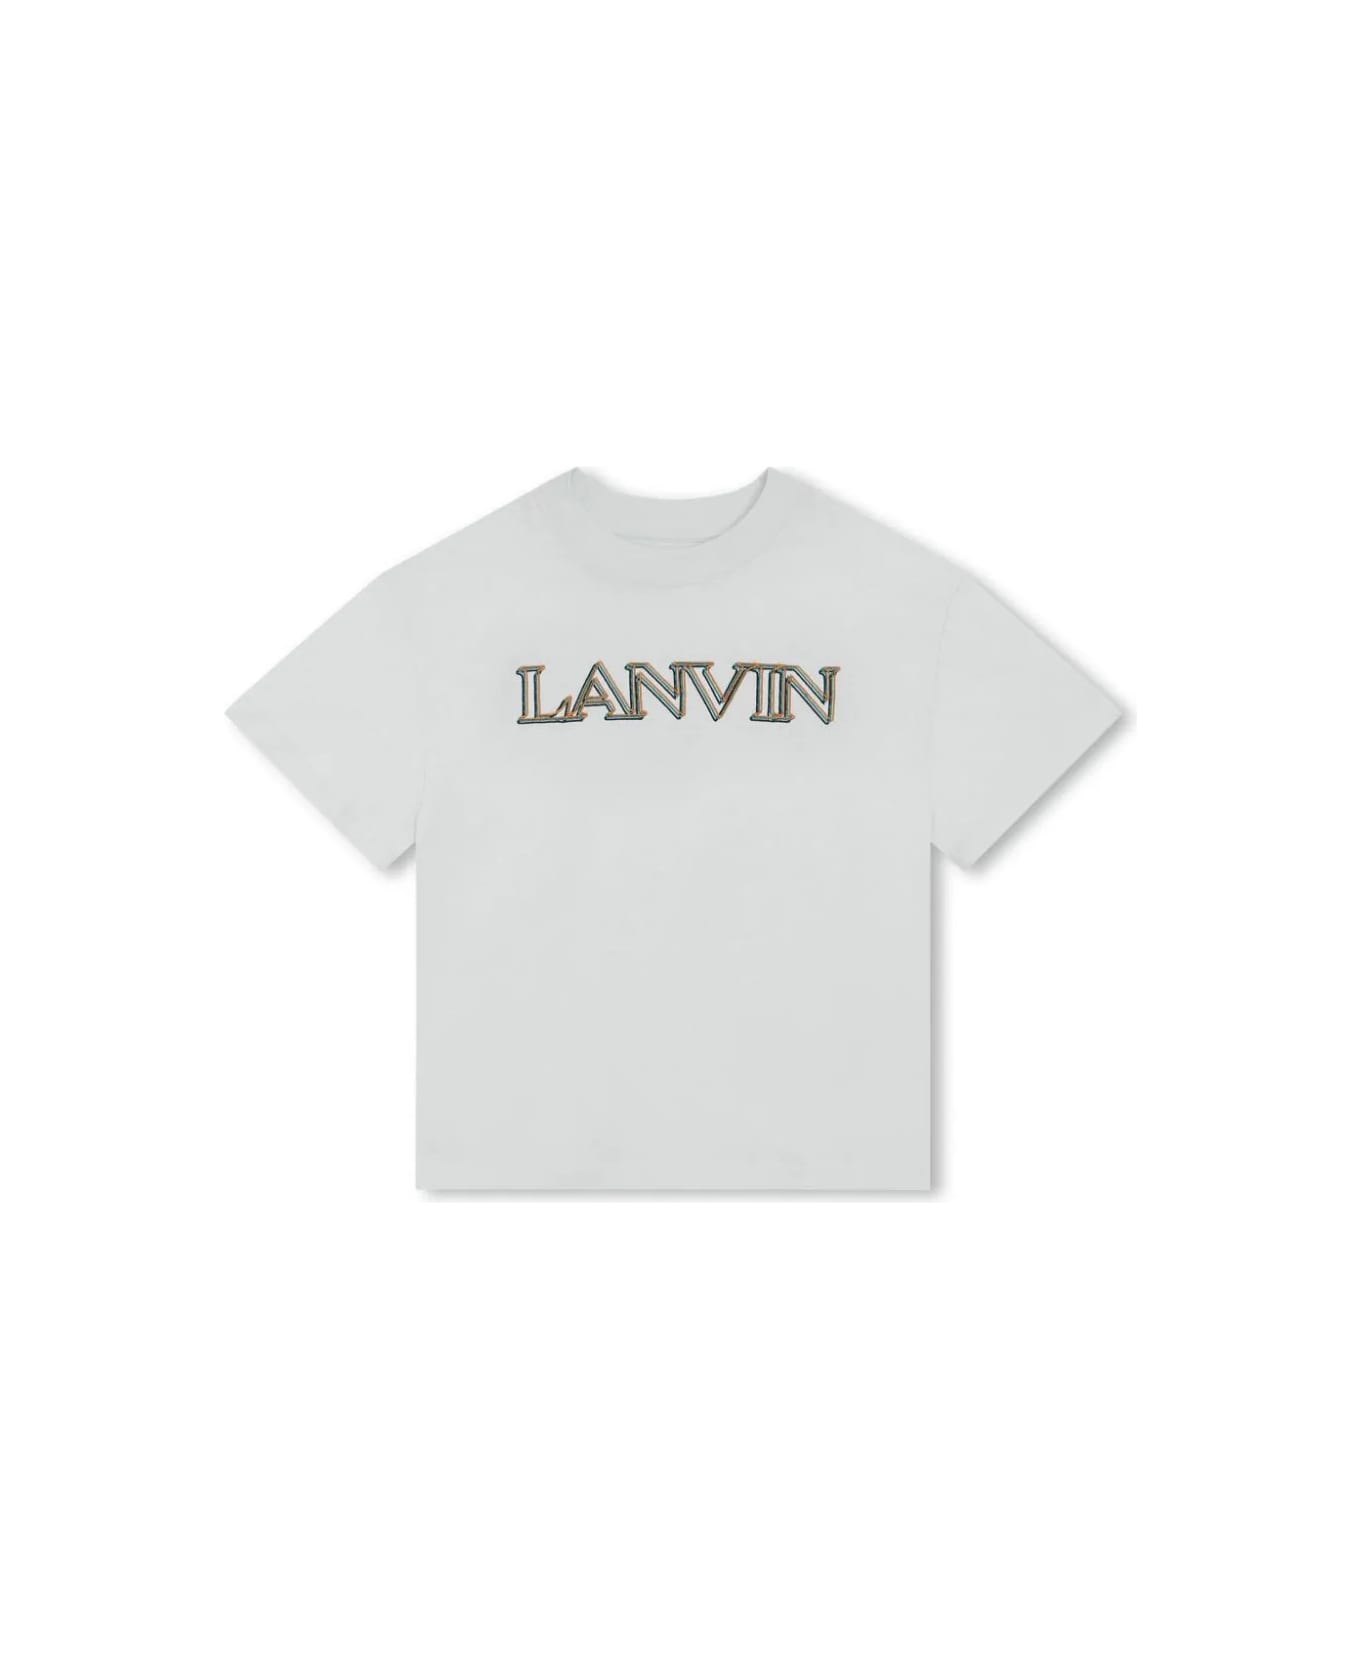 Lanvin Aquamarine T-shirt With Logo - B Verde Acqua